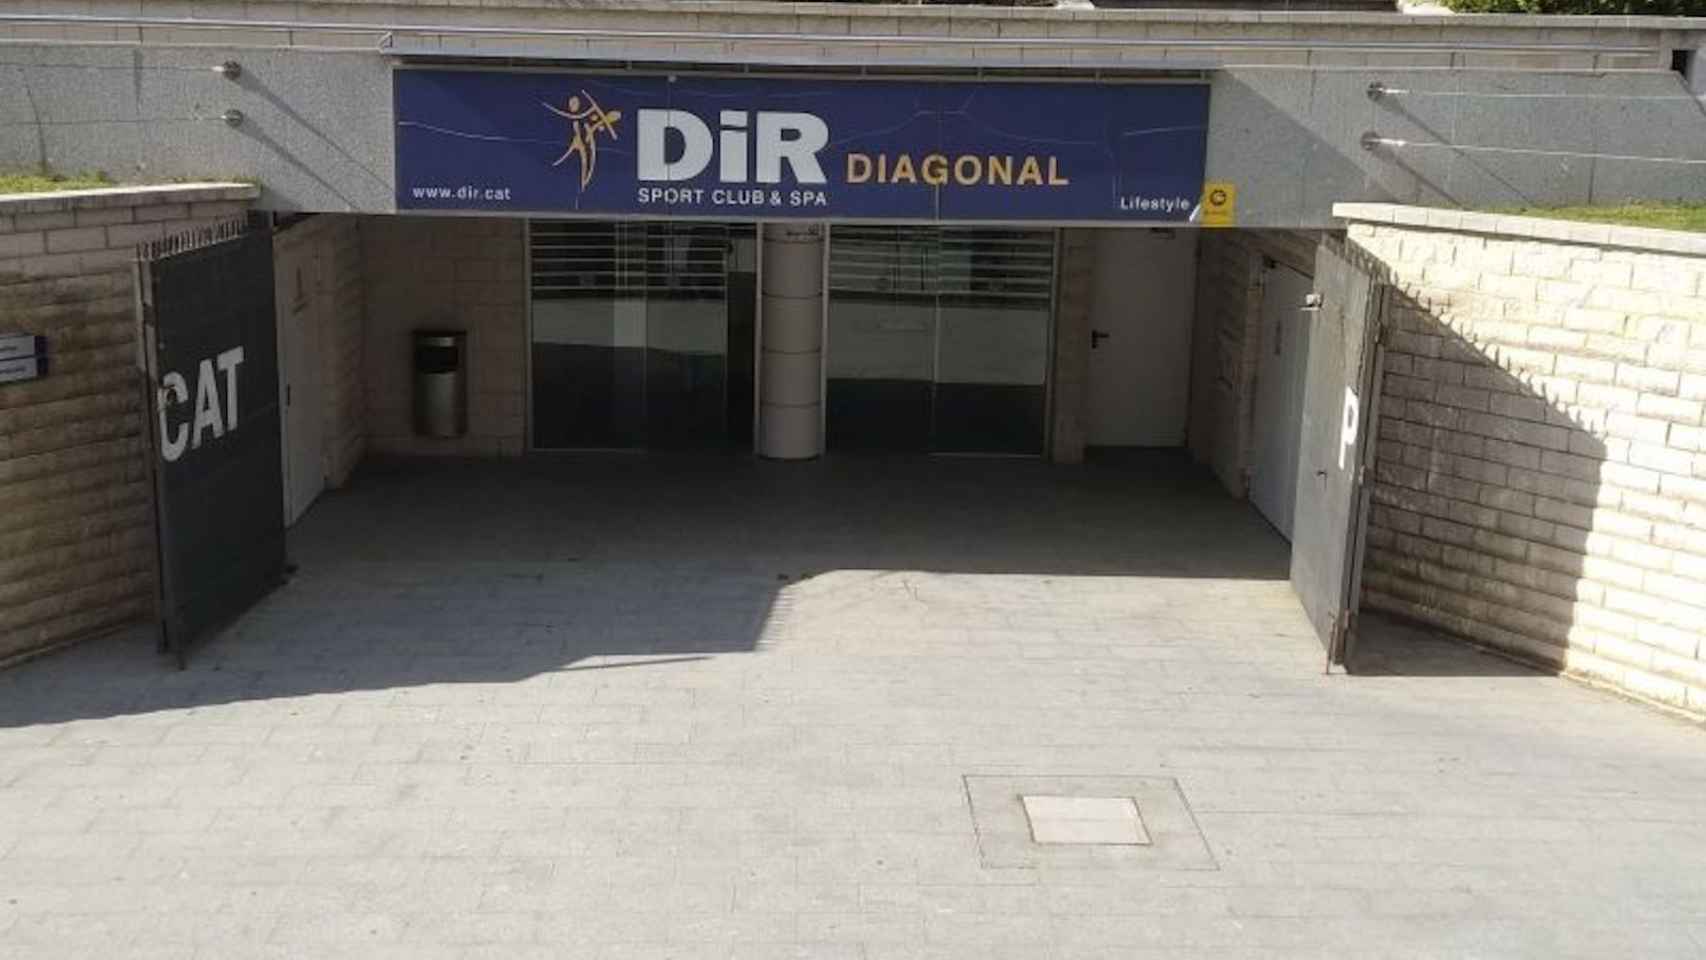 Acceso al gimnasio Dir Diagonal, una de las instalaciones del sector deportivo cerrada / JORDI SUBIRANA